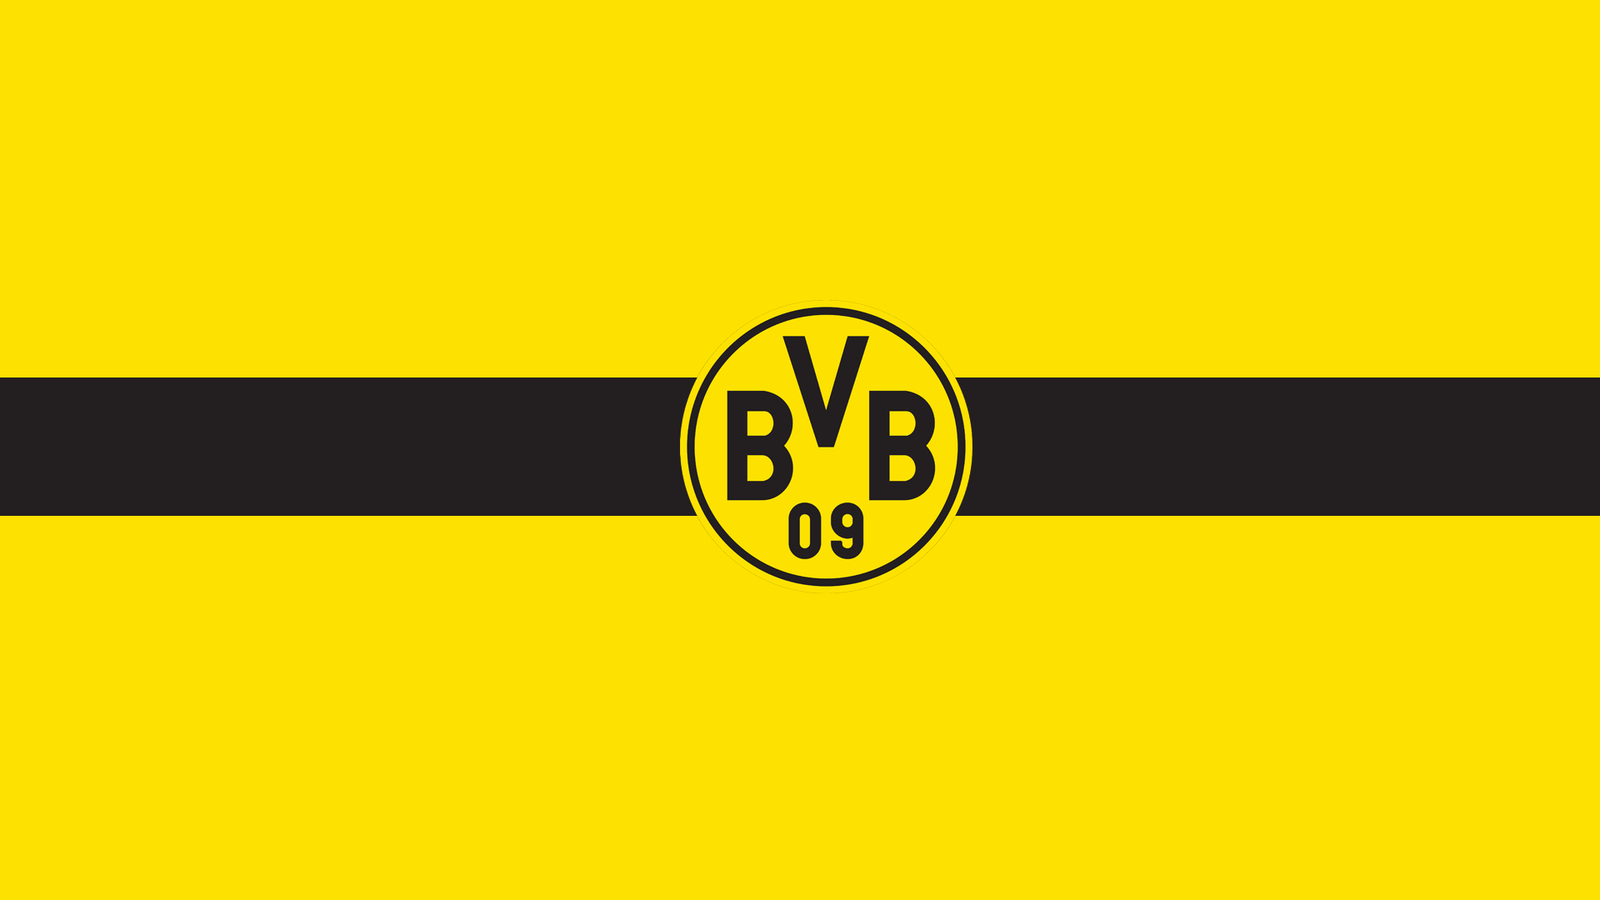 Borussia Dortmund Wallpaper HD. Full HD Picture. Borussia dortmund wallpaper, Dortmund, Football kits